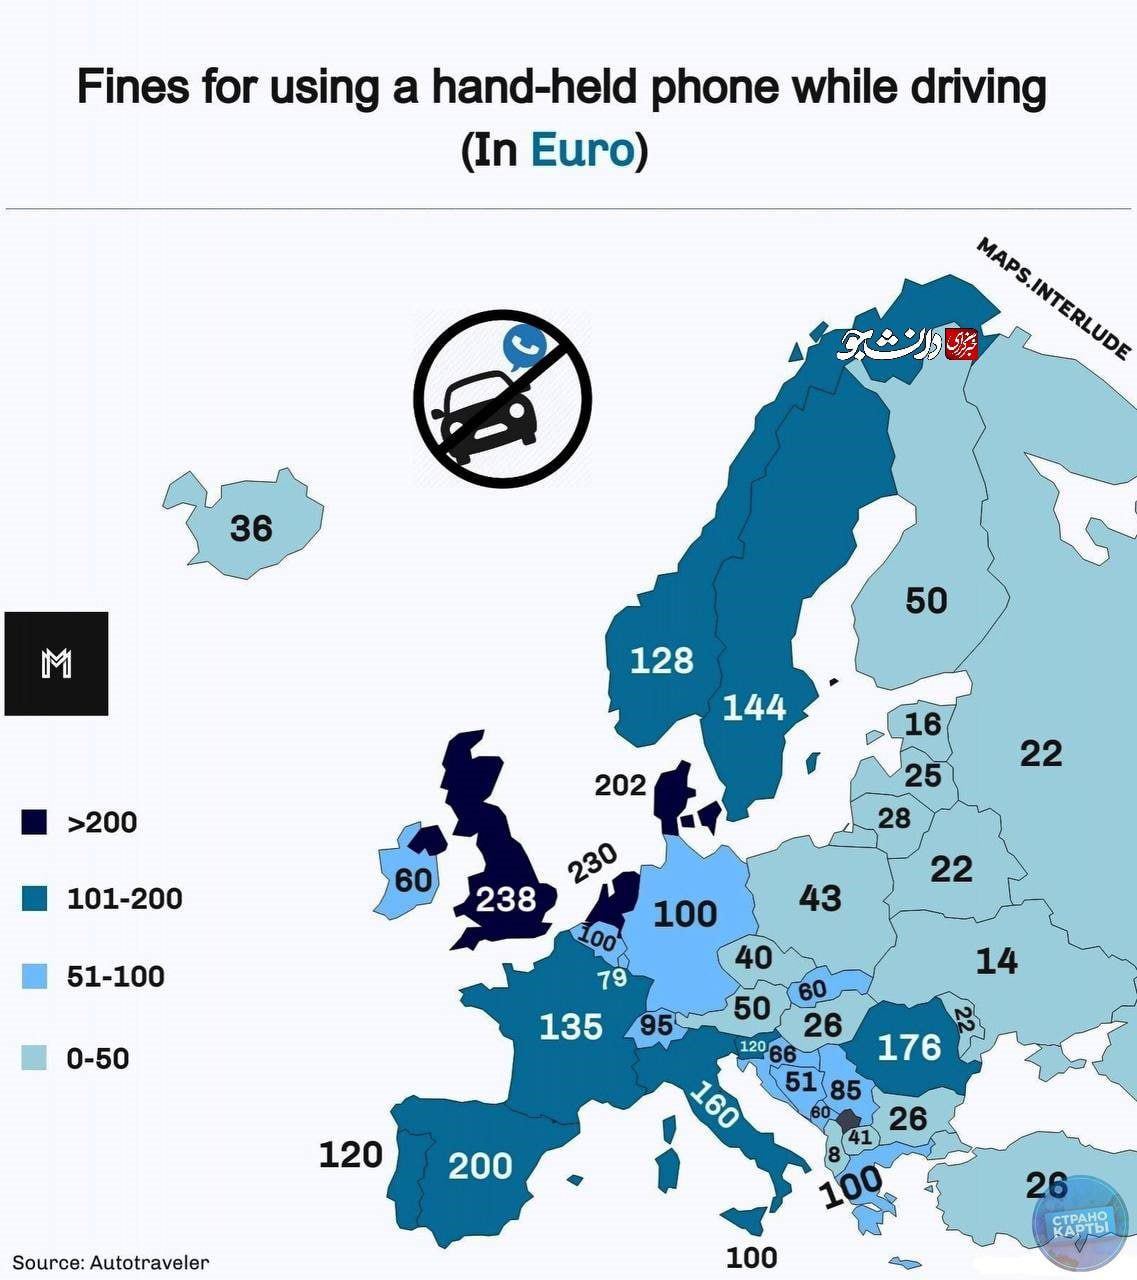 جریمه استفاده از تلفن همراه در هنگام رانندگی در در کشورهای اروپایی چند یورو است؟